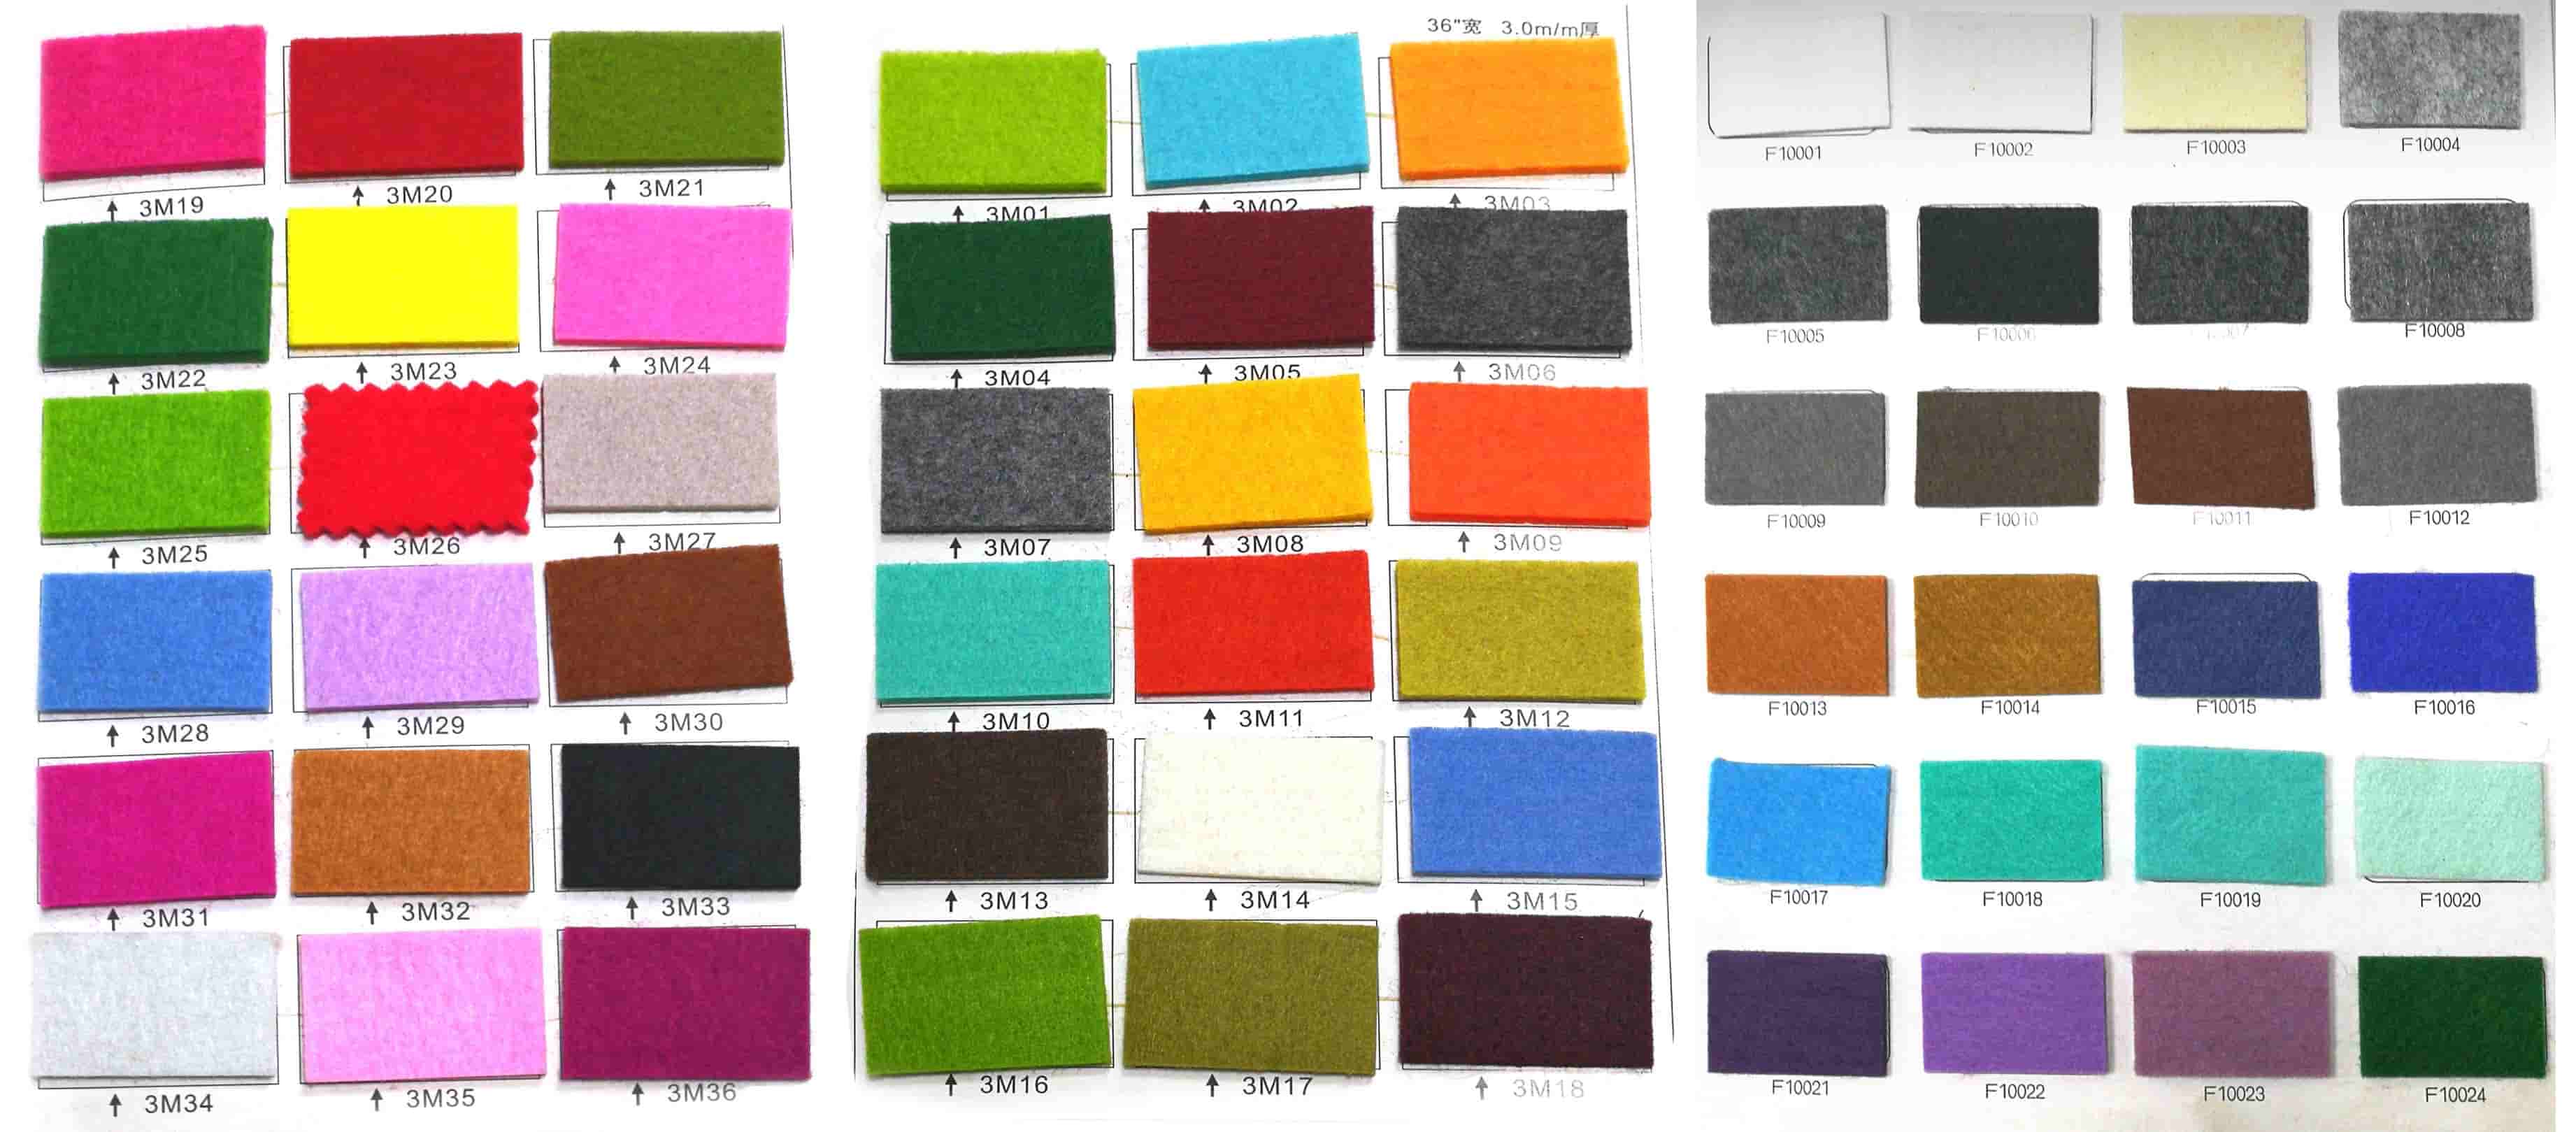 Tableaux de couleurs de feutre à titre de référence.